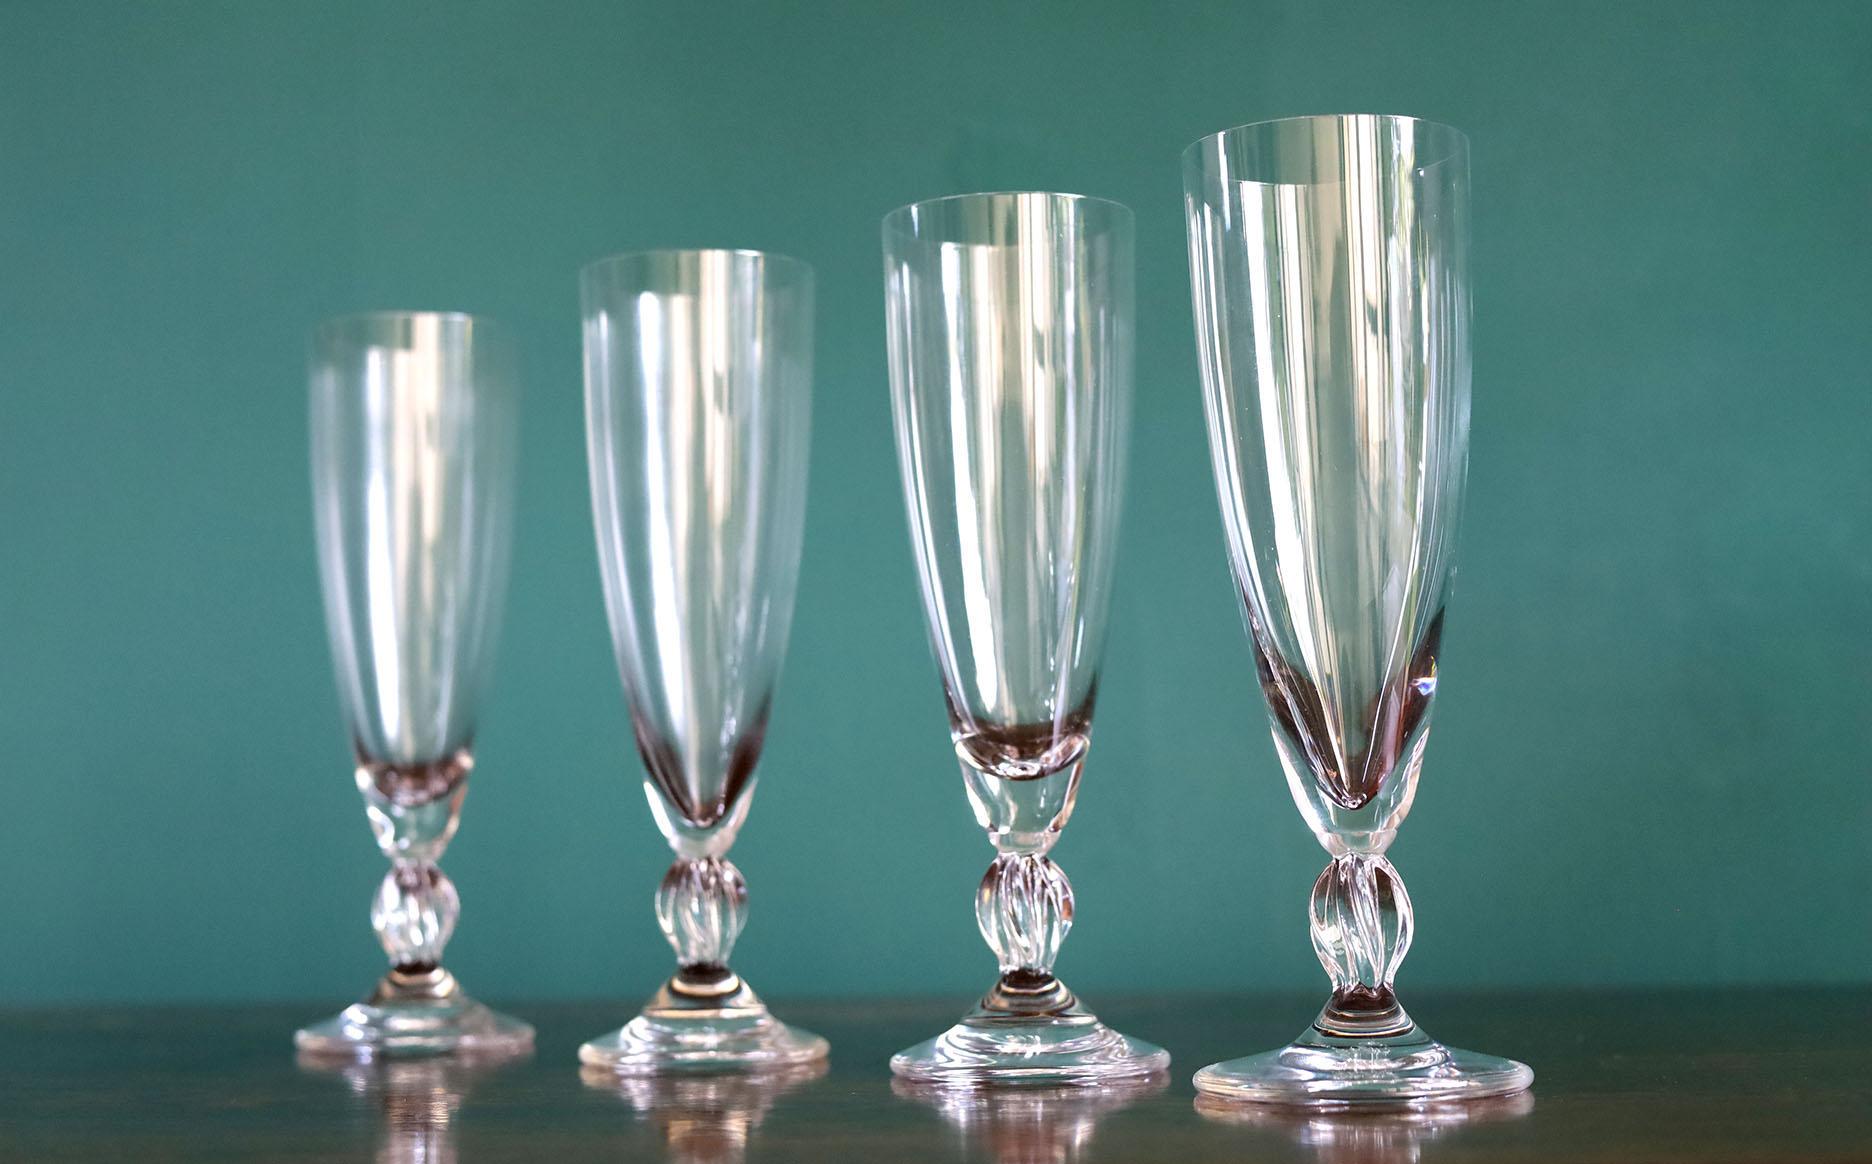 Très élégant ensemble de 4 flûtes à champagne.
état exceptionnel, probablement jamais utilisé.
Fabriqué par l'icône de la qualité et de la fabrication du cristal Lalique France.

 